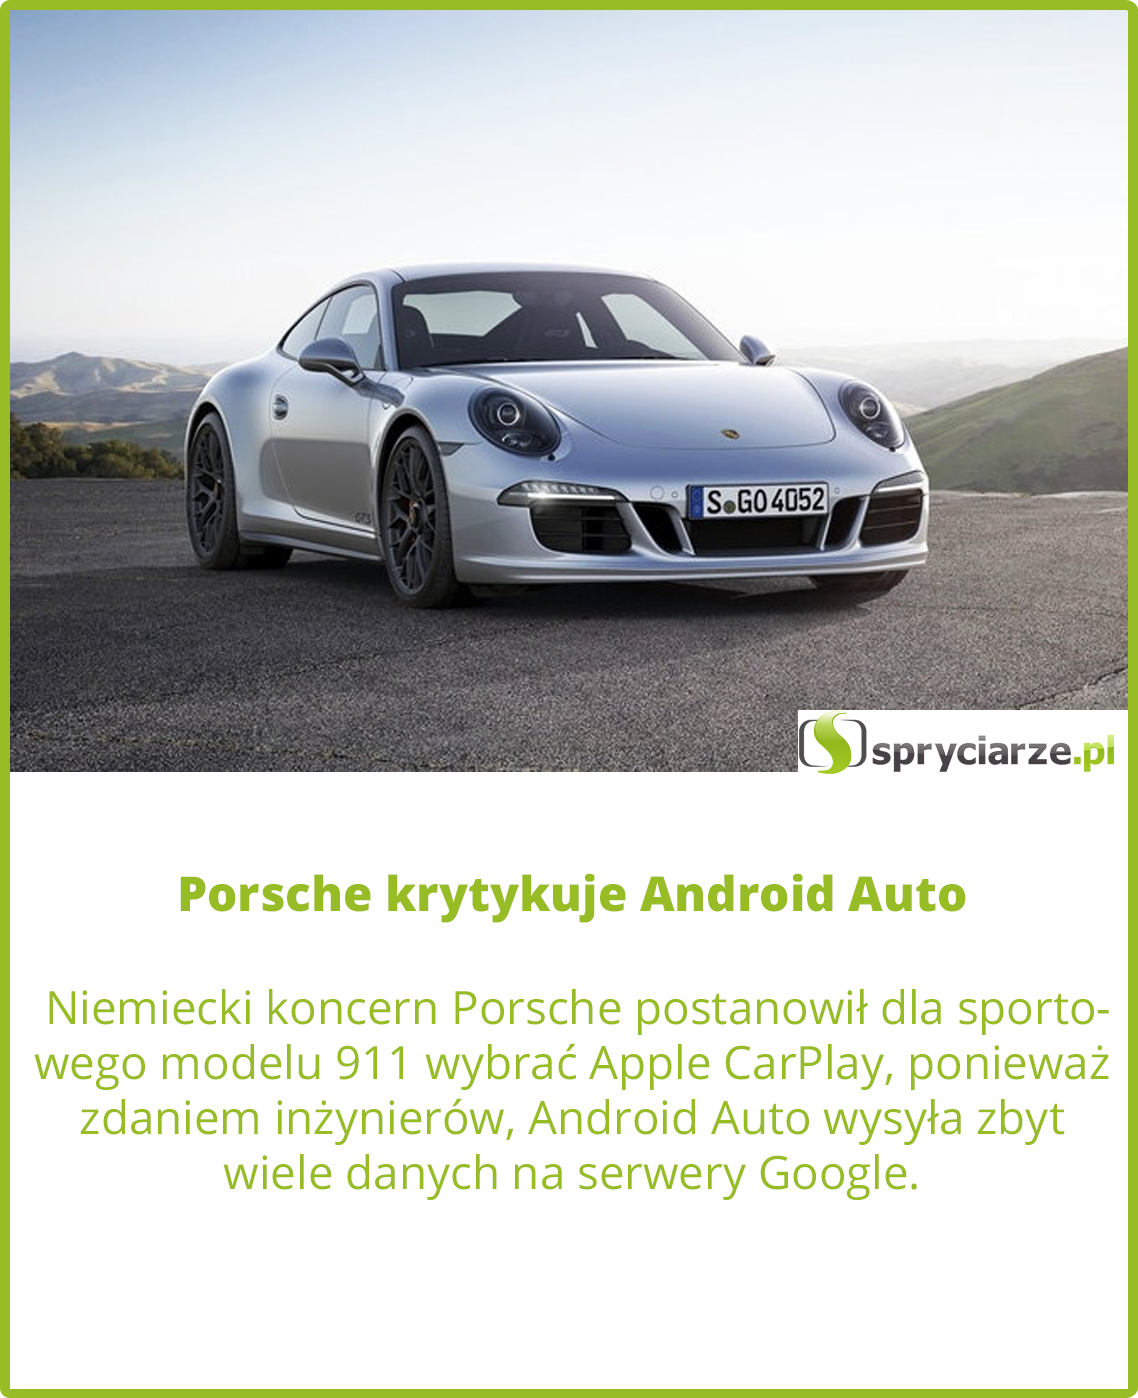 Porsche krytykuje Android Auto